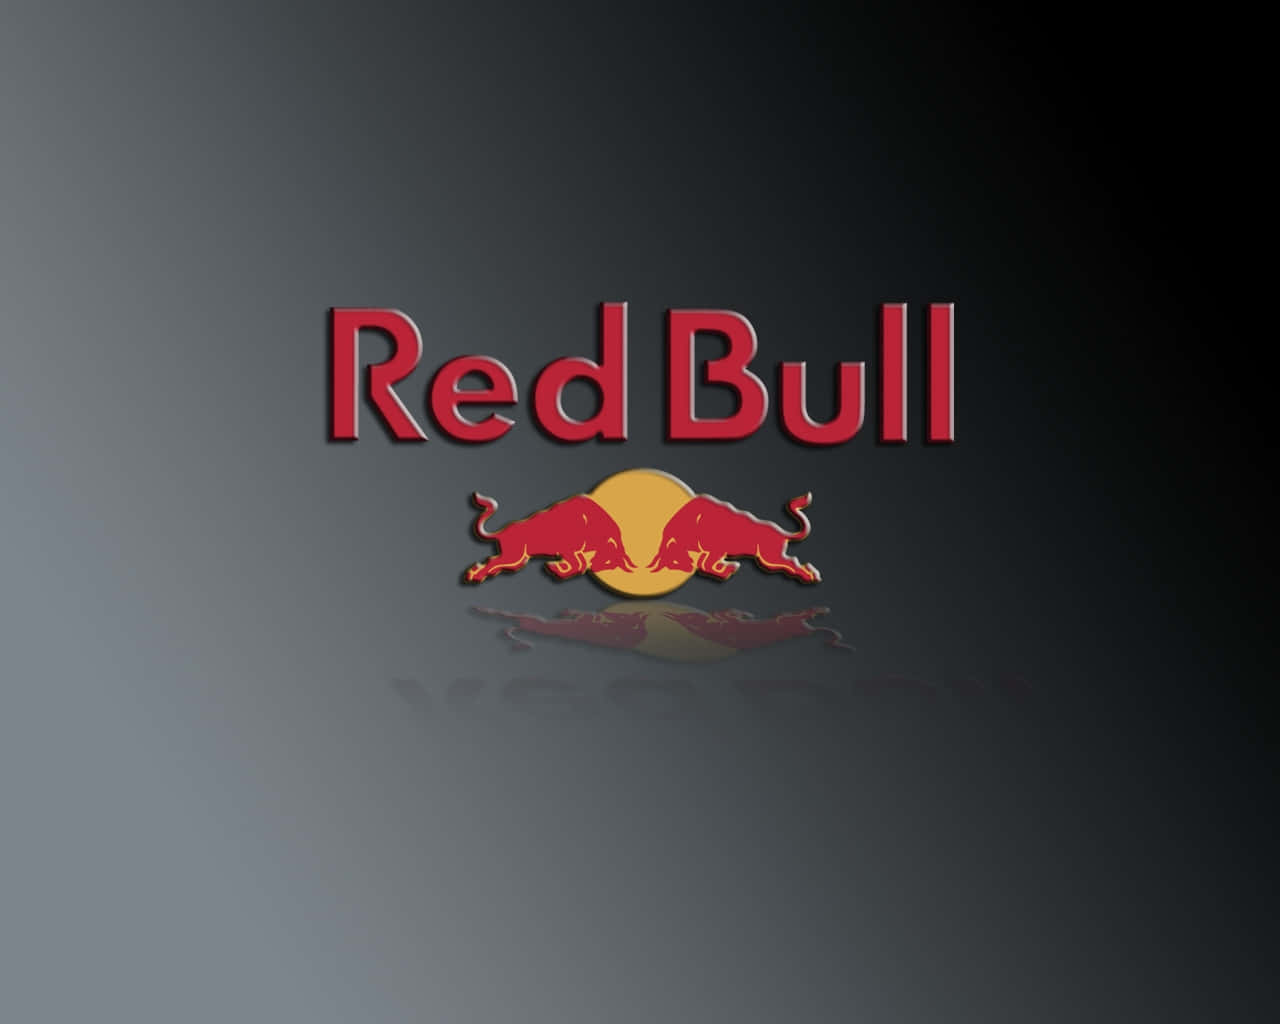 Fåvingarna Med Red Bull!